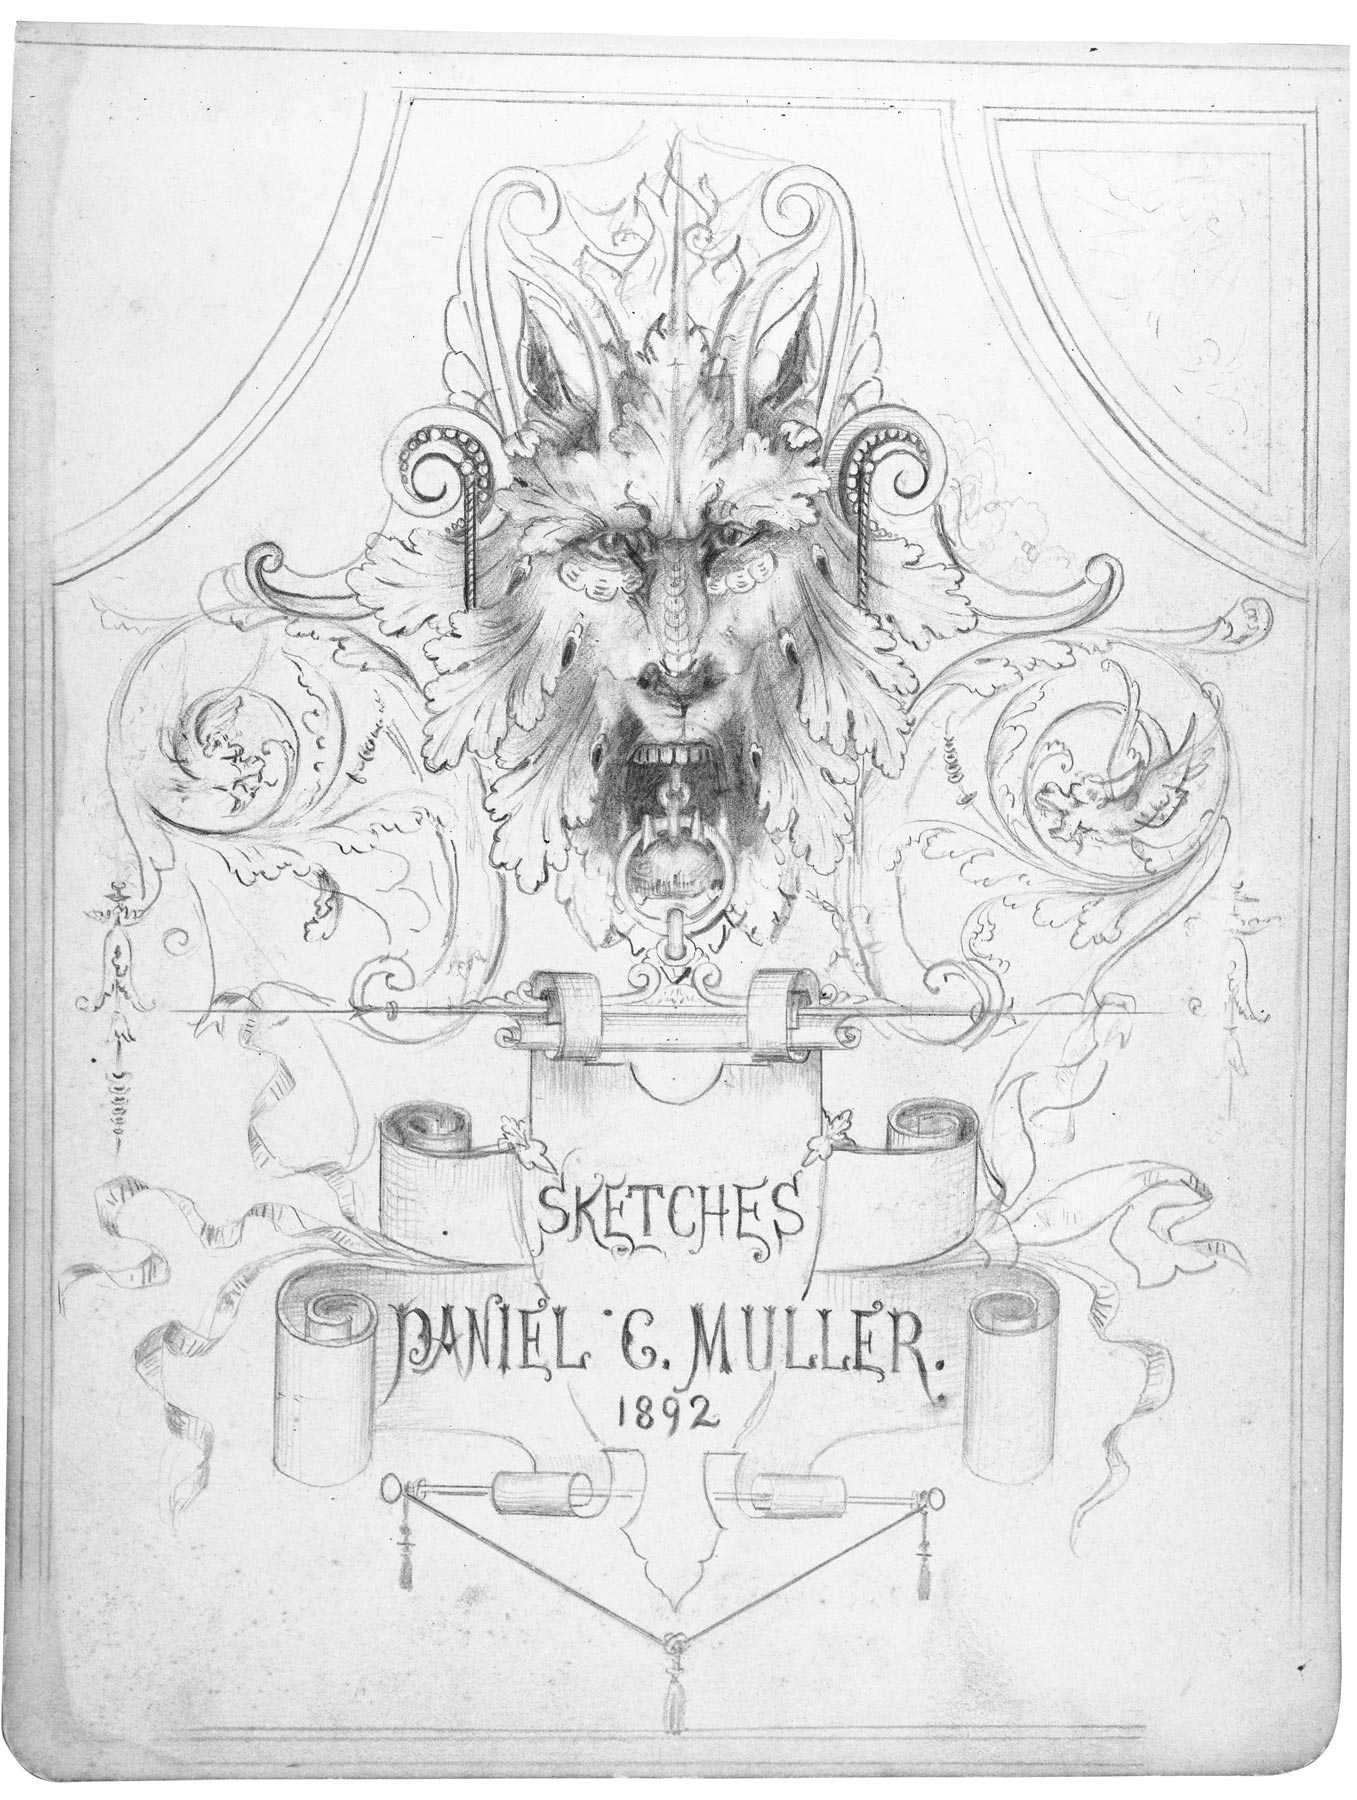 Daniel Carl Müller (1872–1952), sketchbook pages, 1892.